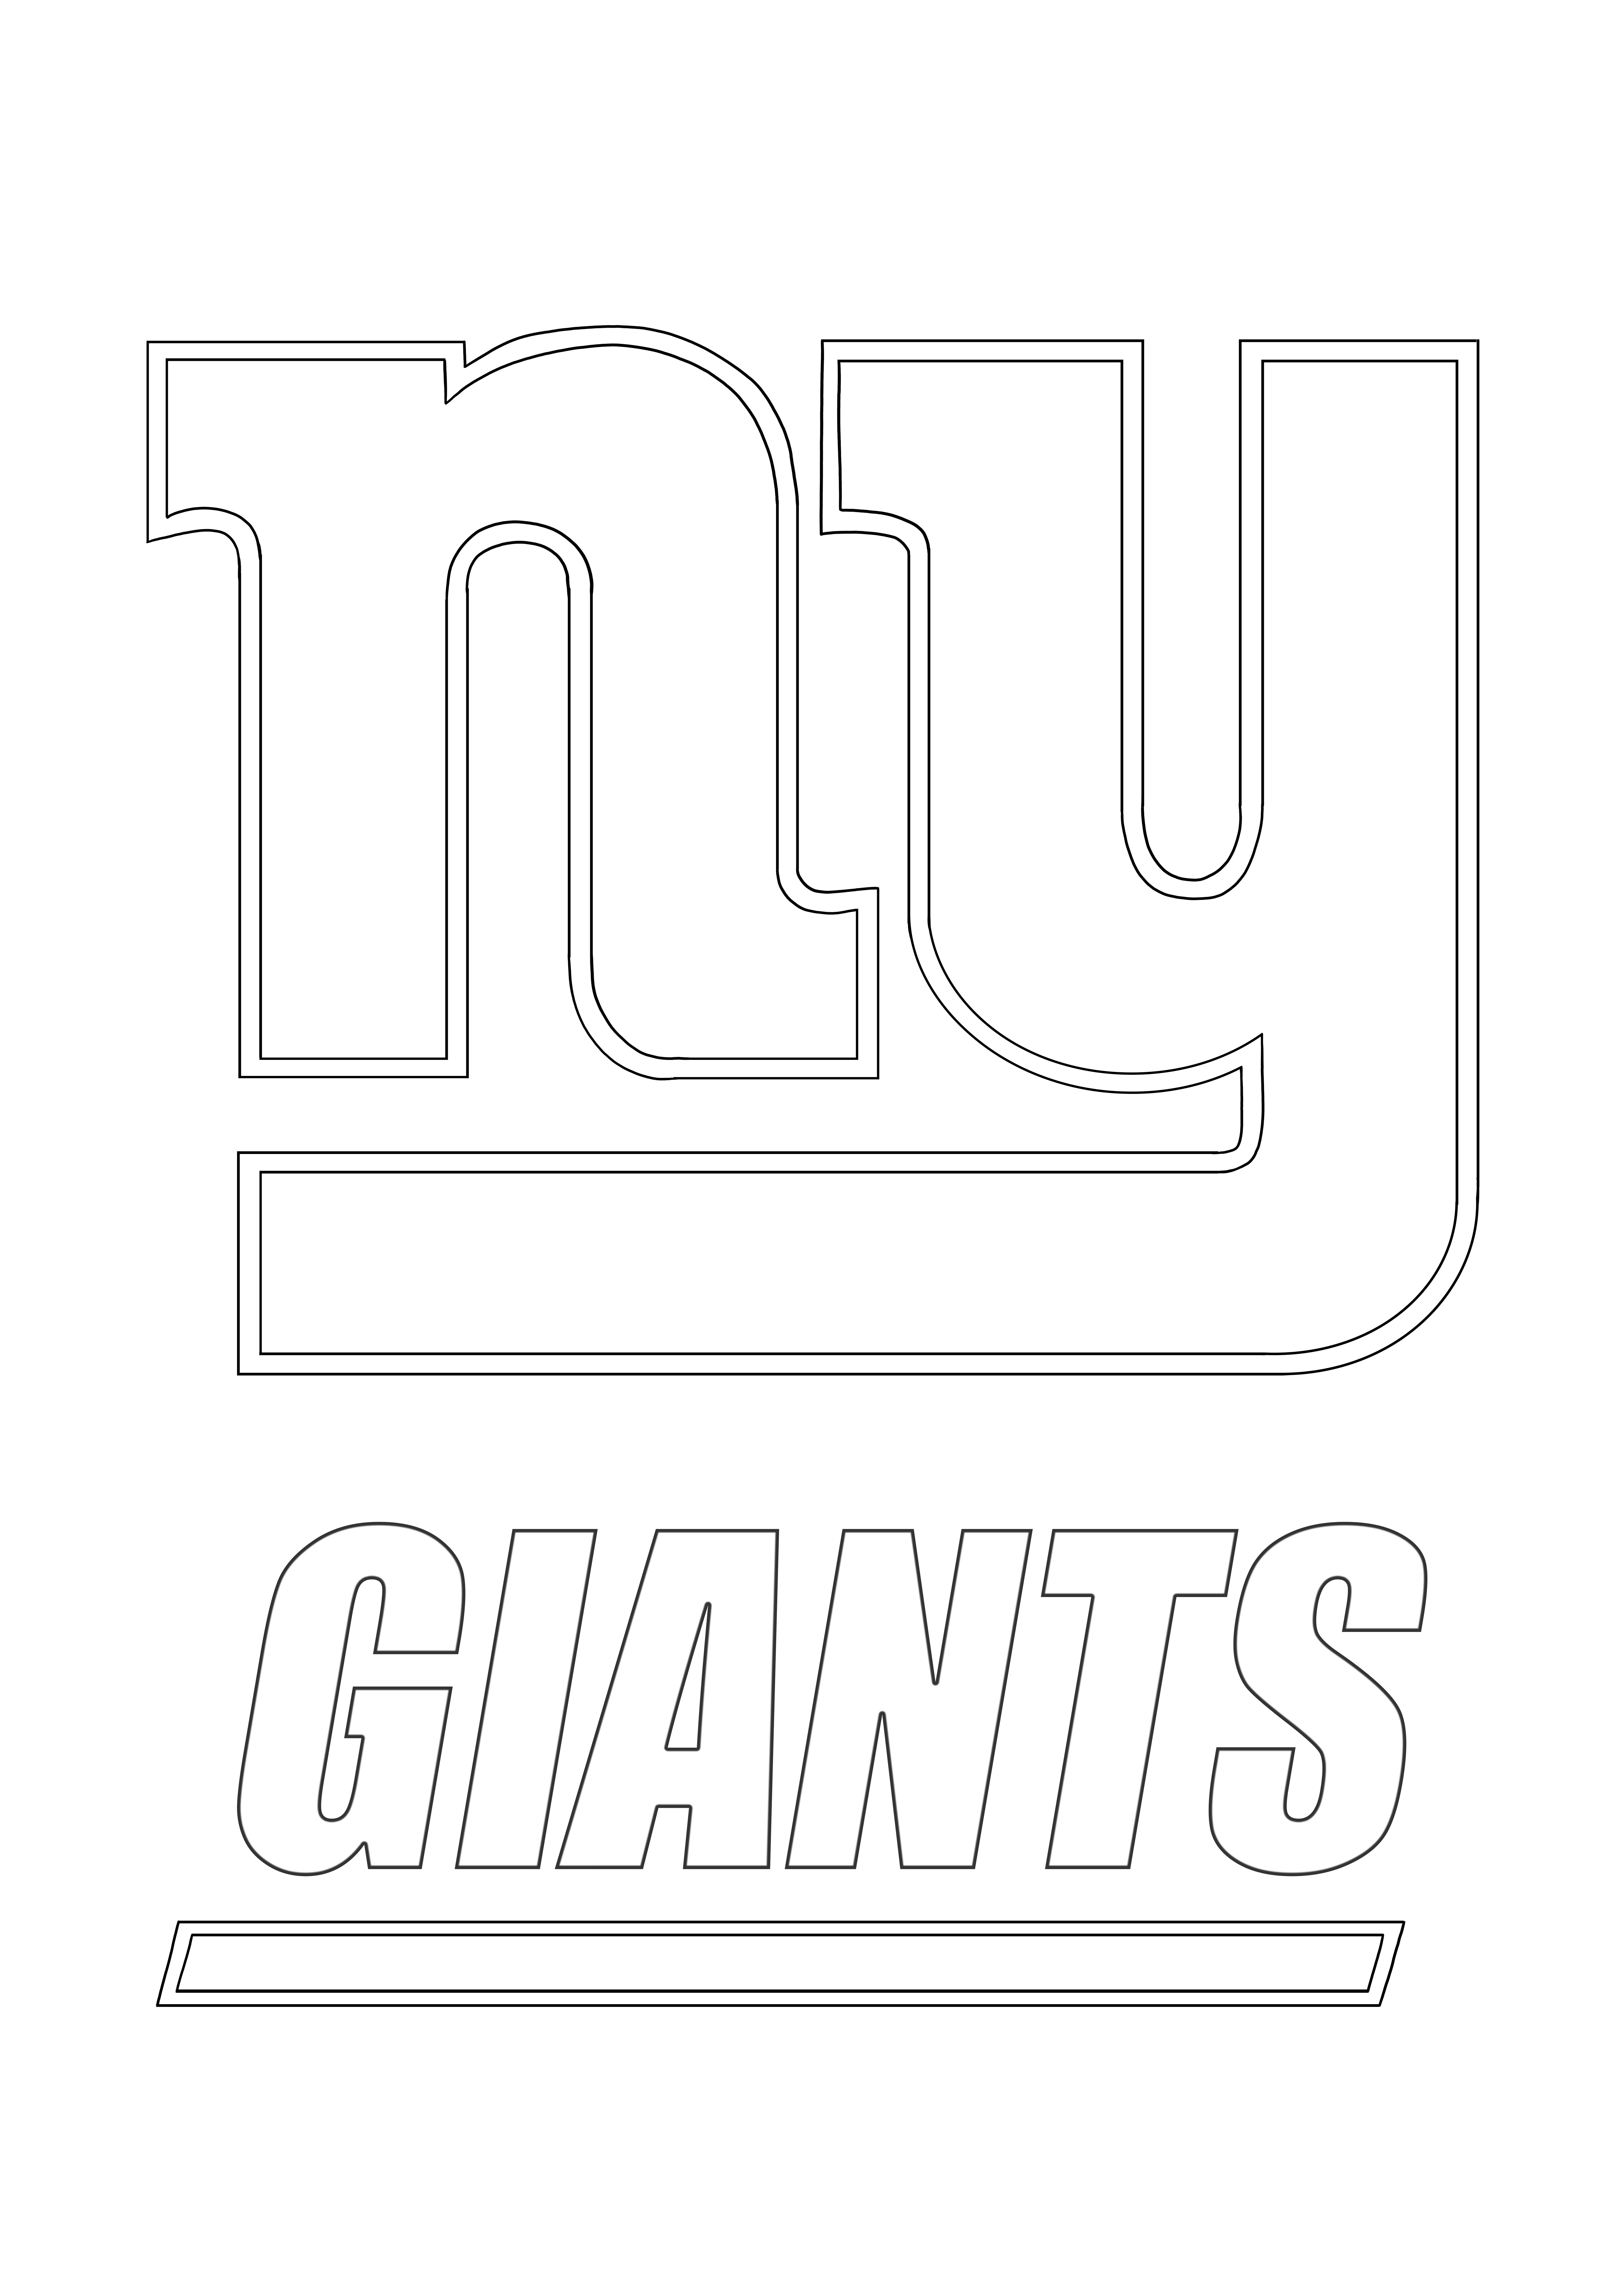 Logo preferito dei New York Giants da colorare e stampare gratuitamente